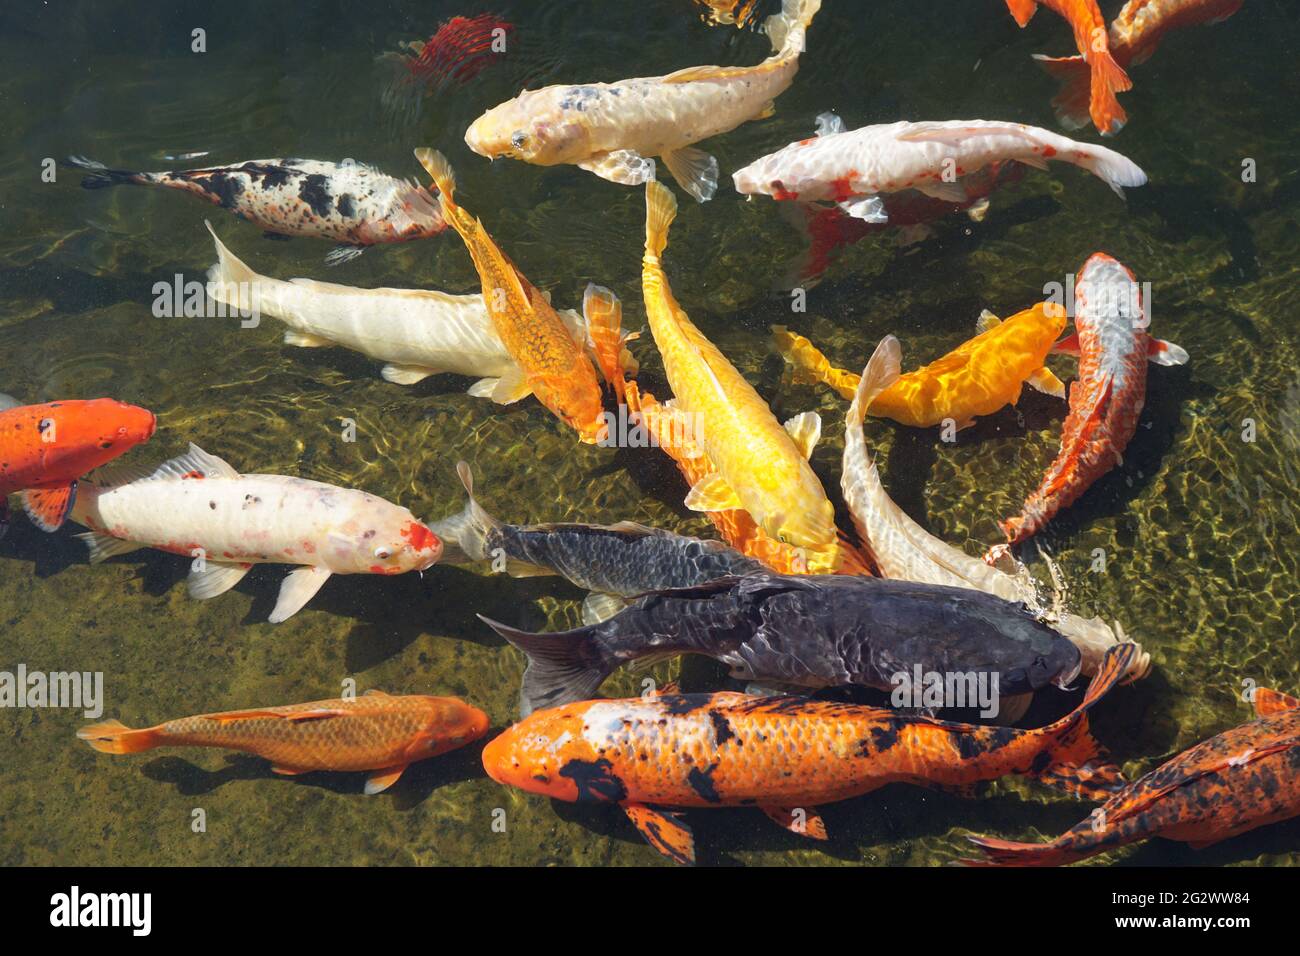 Koi fish swimming in pond Stock Photo